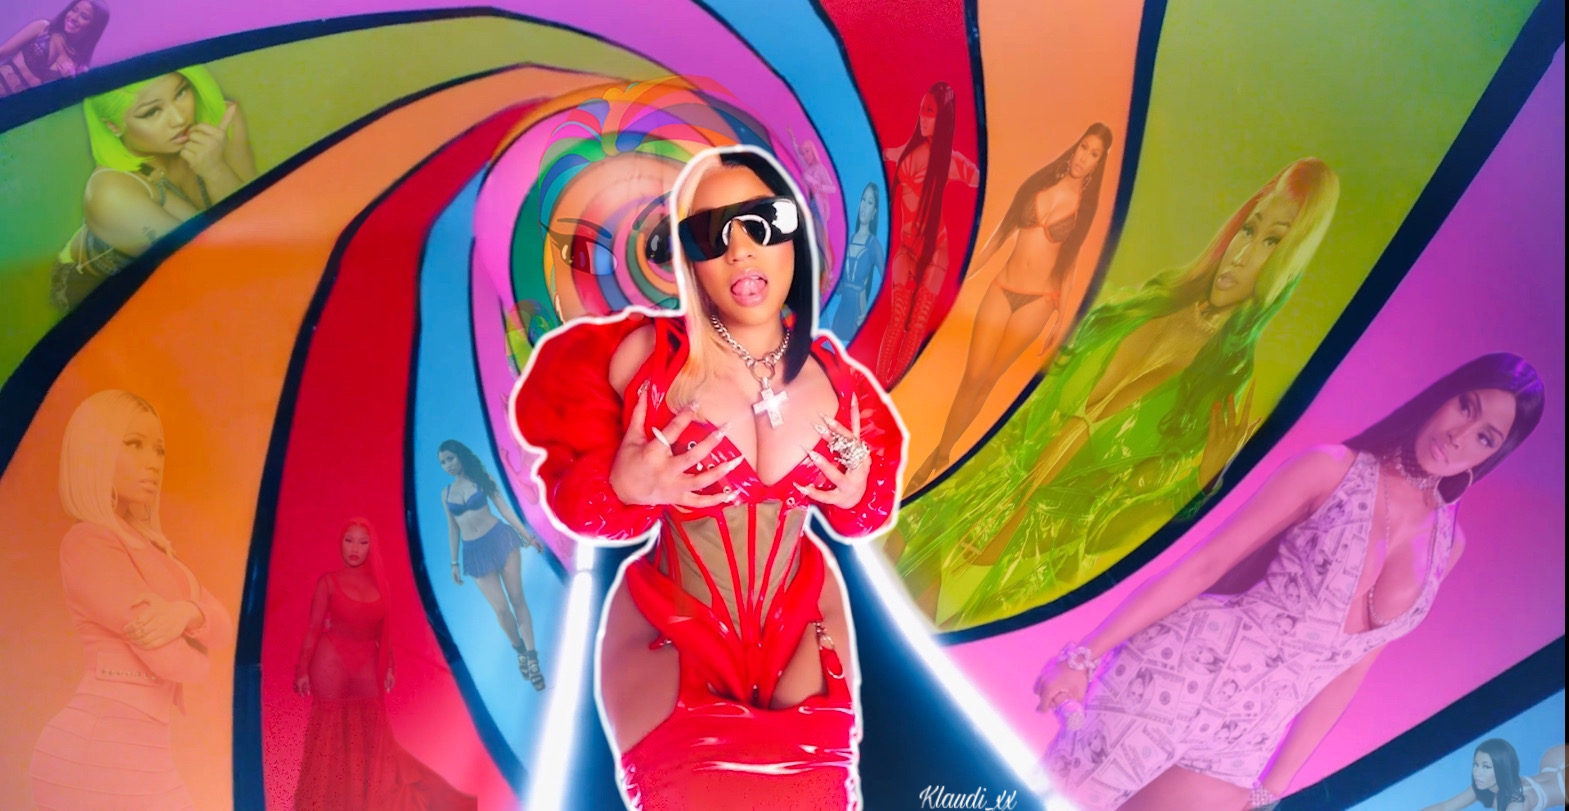 6ix9ine Nickiminaj Trollz Nicki Minaj Image By Klaudixx